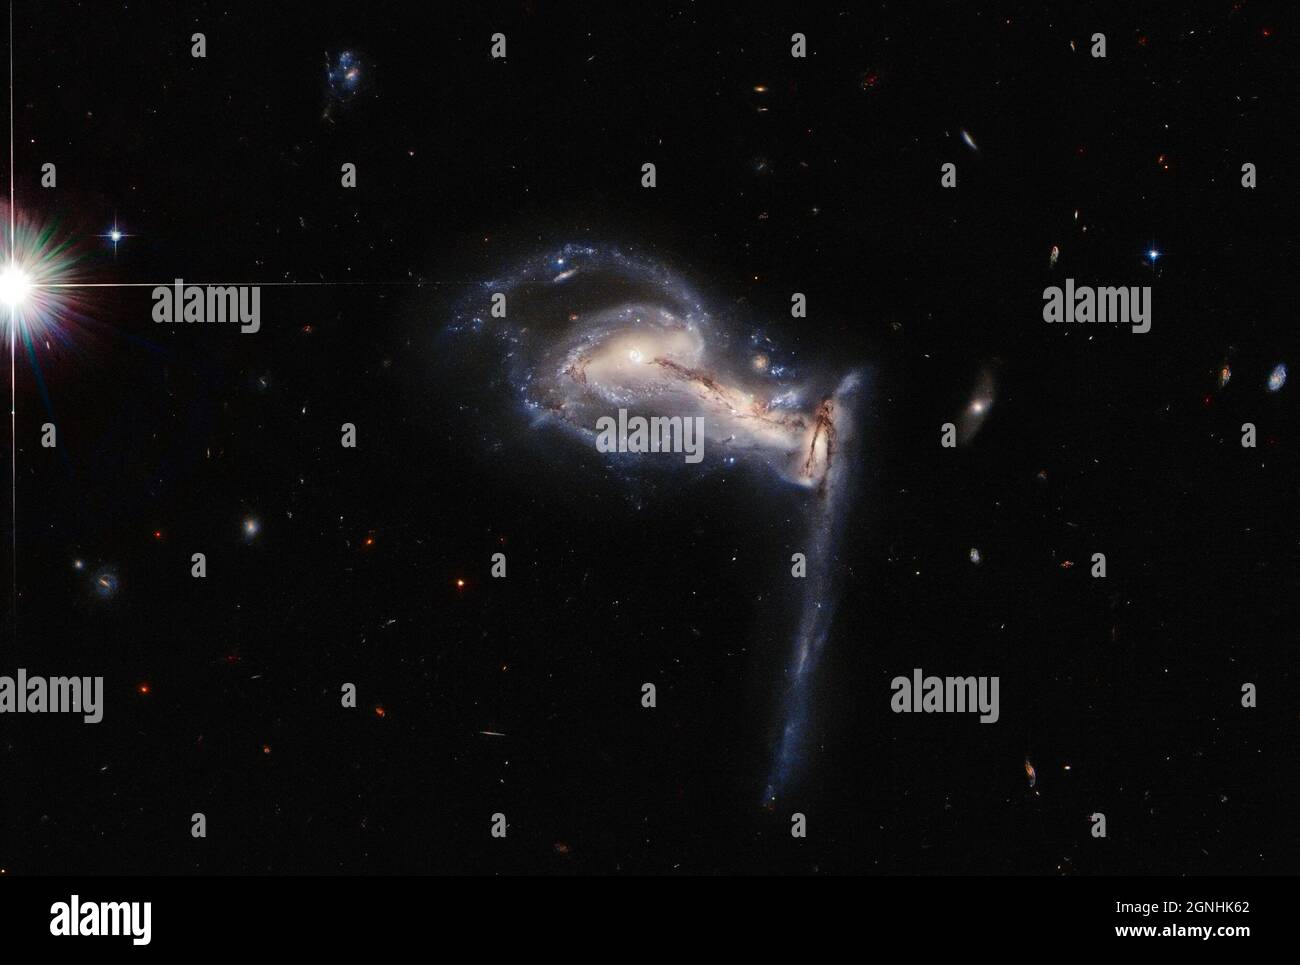 Una tripletta di galassie interagenti. Questo sistema è noto come Arp 195 e si trova nella costellazione Lynx. Fonte immagine NASA/ESA Hubble Space Telescope Foto Stock